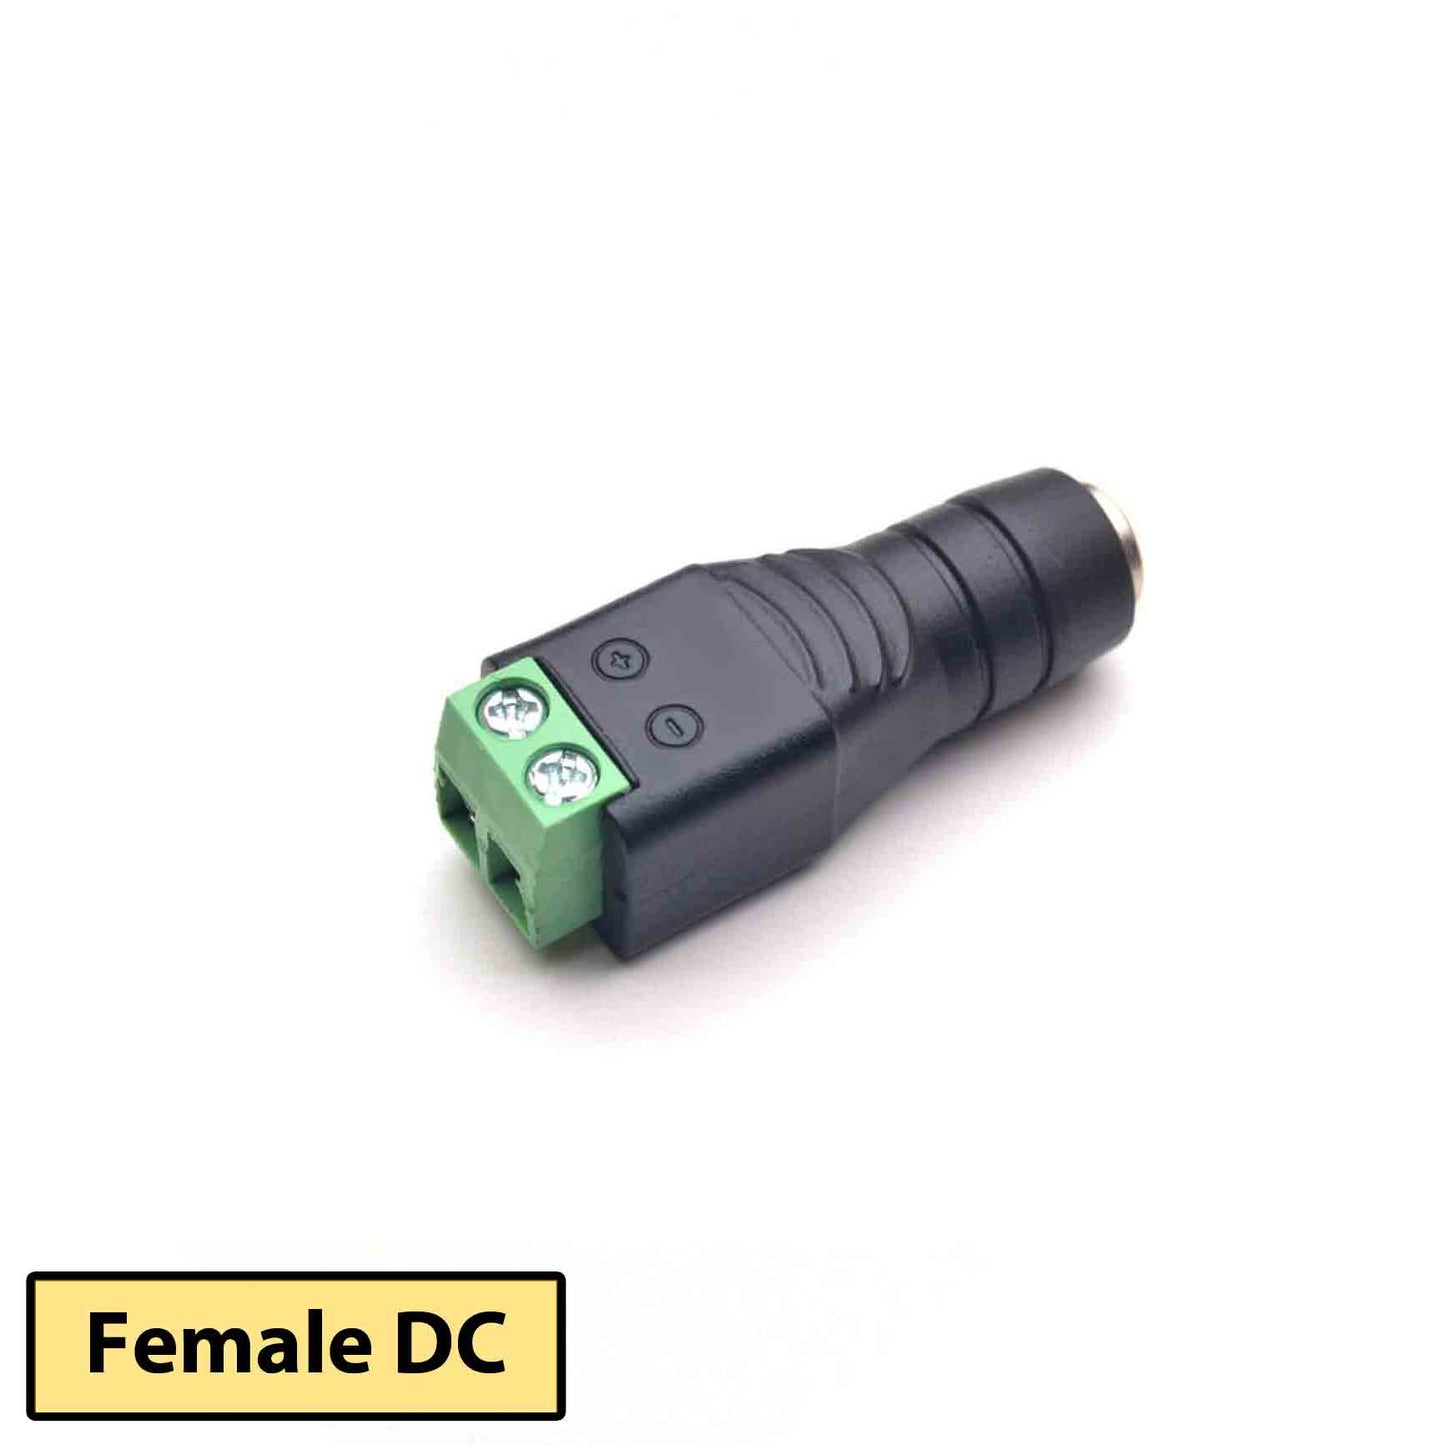 PN 7094 | Female DC Barrel Jack Plug Adapter 4-PACK